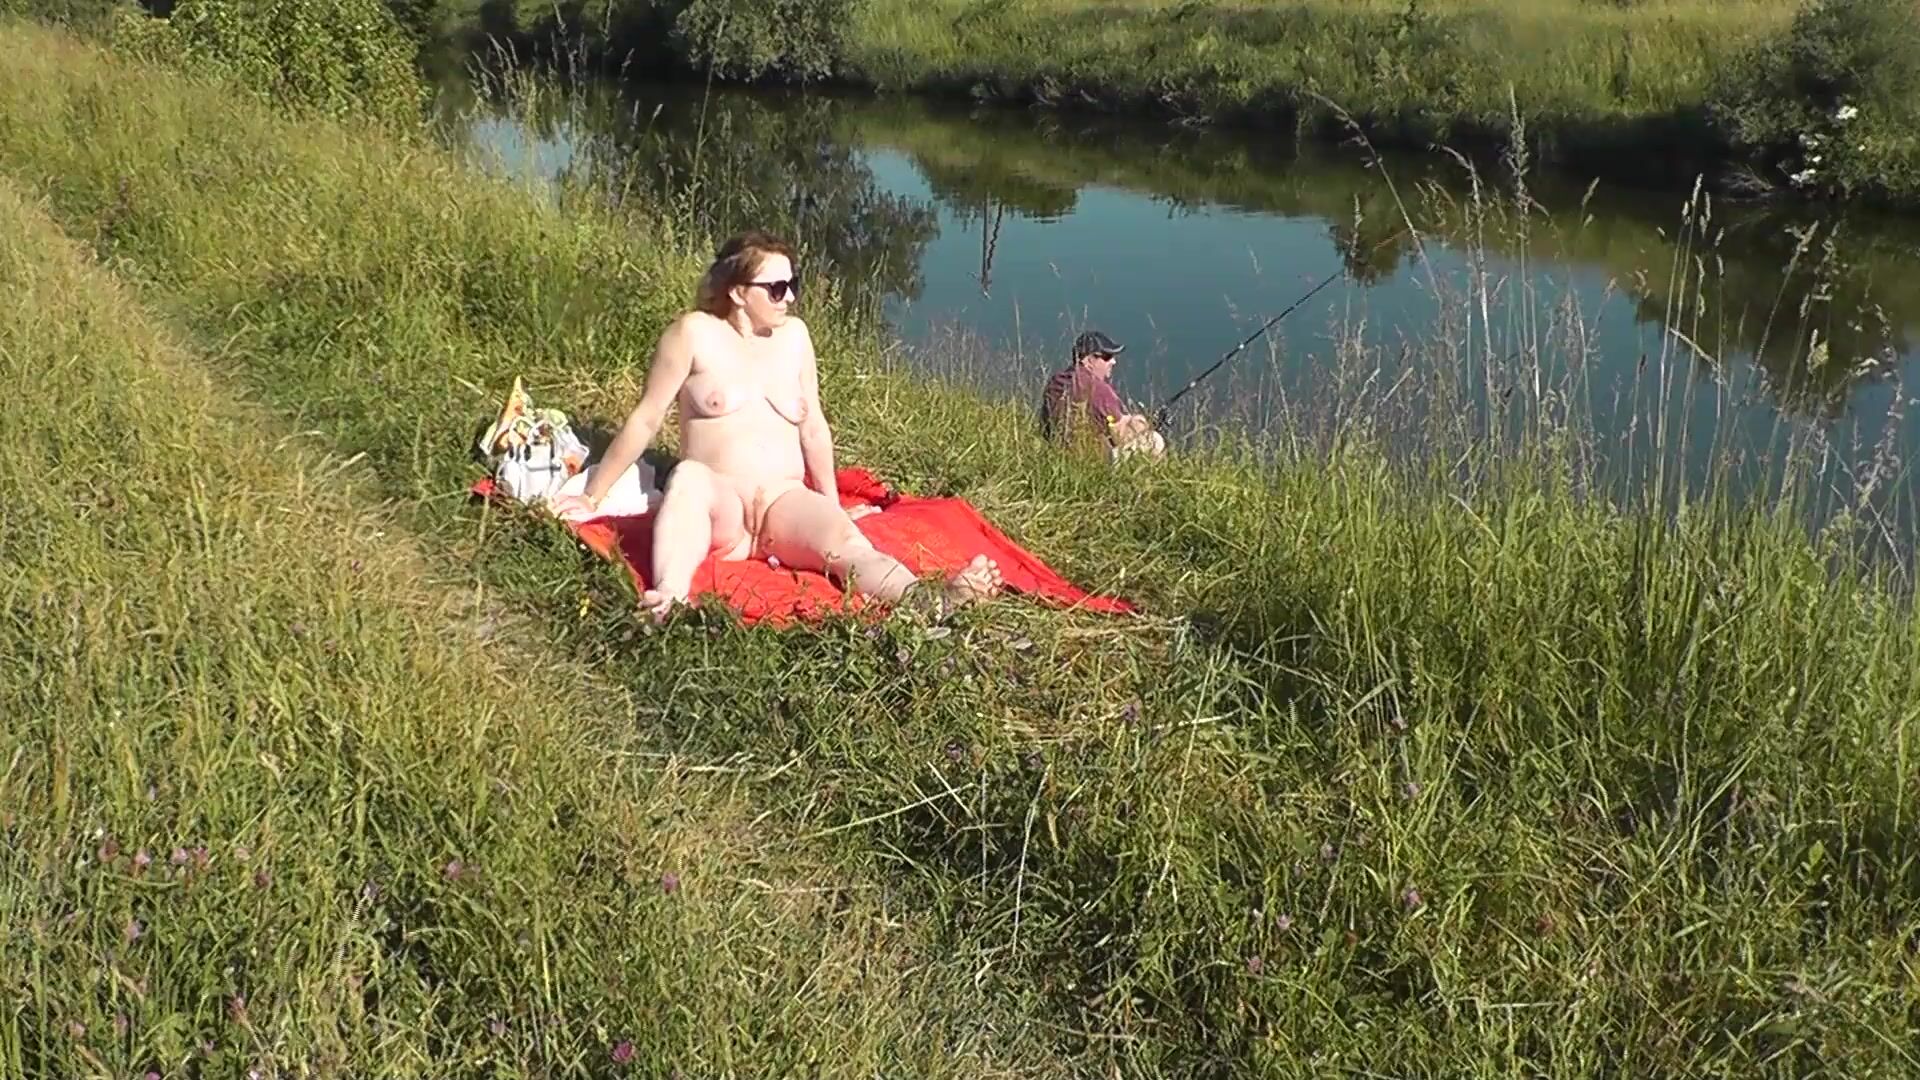 MILF sexy Frina na margem do rio despida e a apanhar banhos de sol nua. Um pescador aleatório observa-a, e no final decide juntar-se à mulher nua